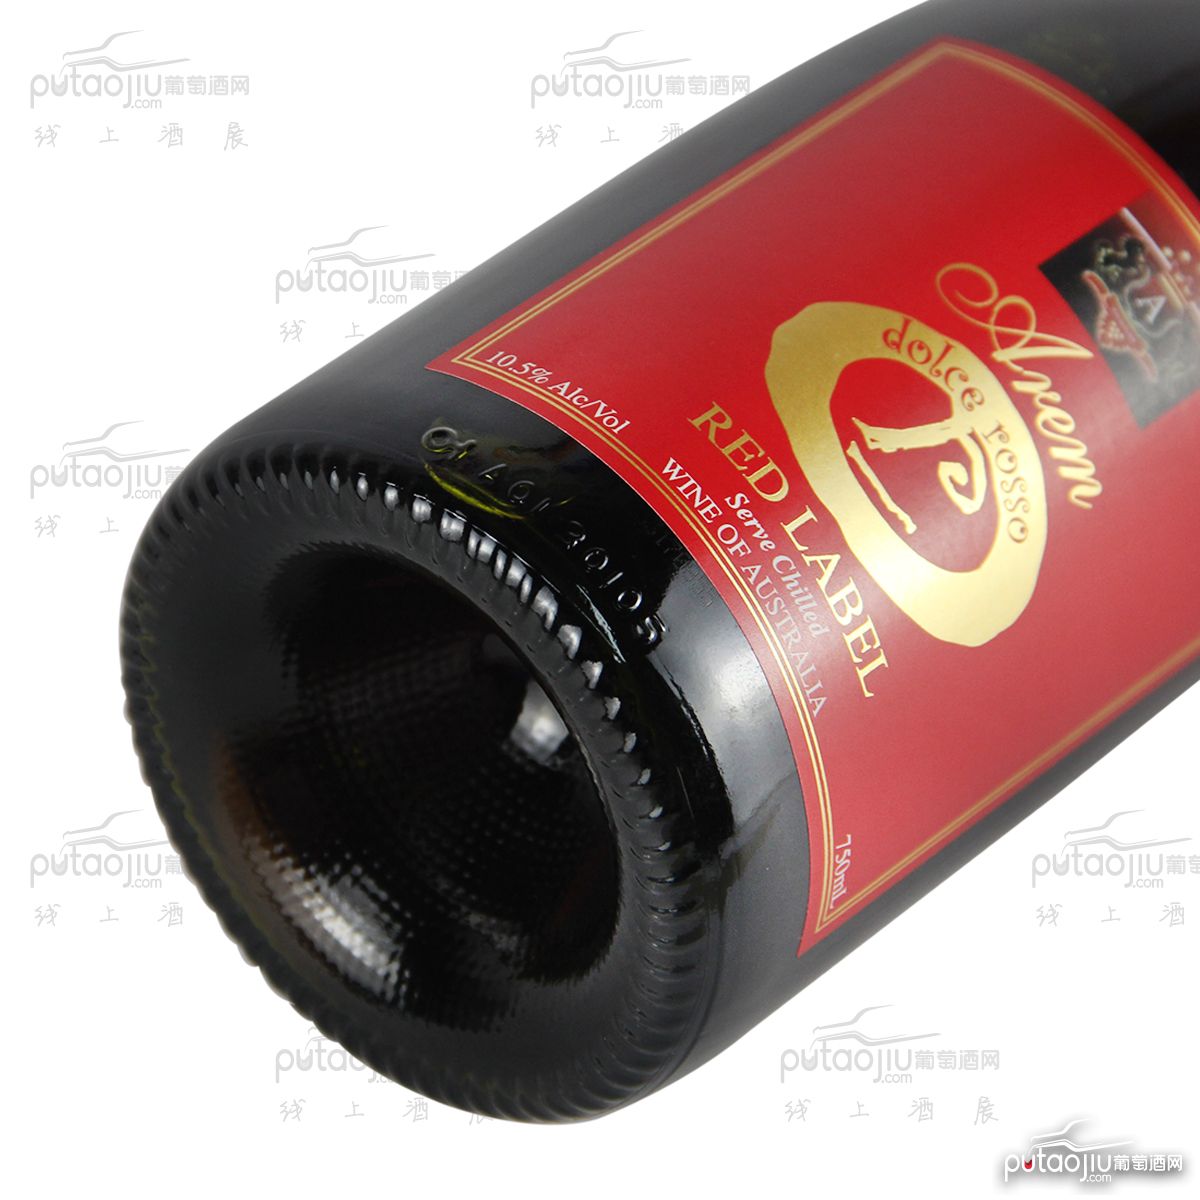 澳大利亚高奔产区澳宝红酒庄混酿红宝甜红葡萄酒